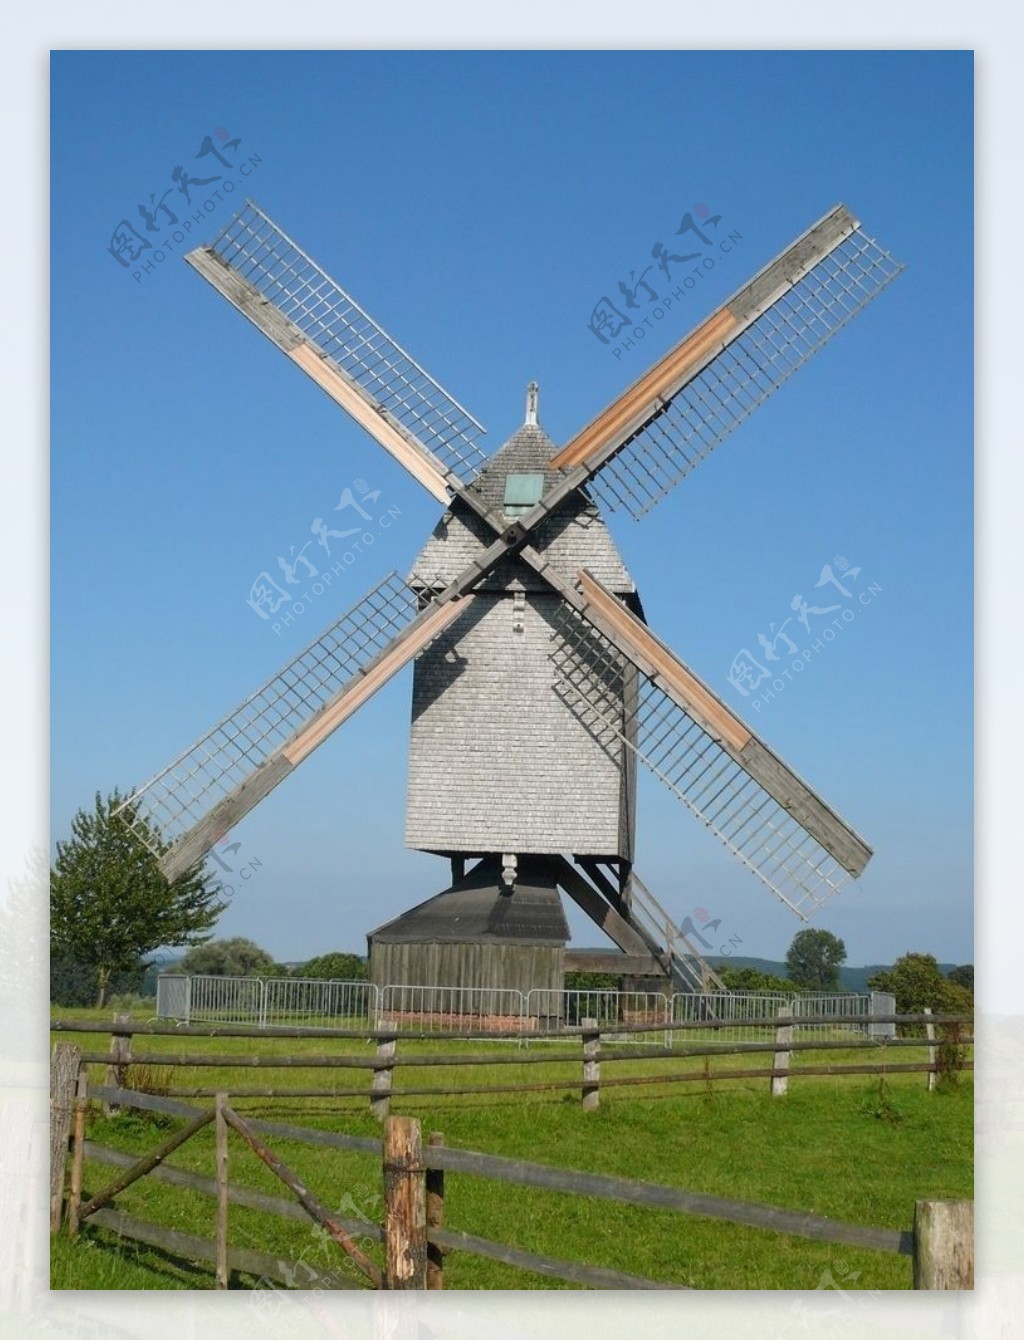 为什么荷兰被称为“风车之国”? - 汤姆猫荒野派对资讯-小米游戏中心